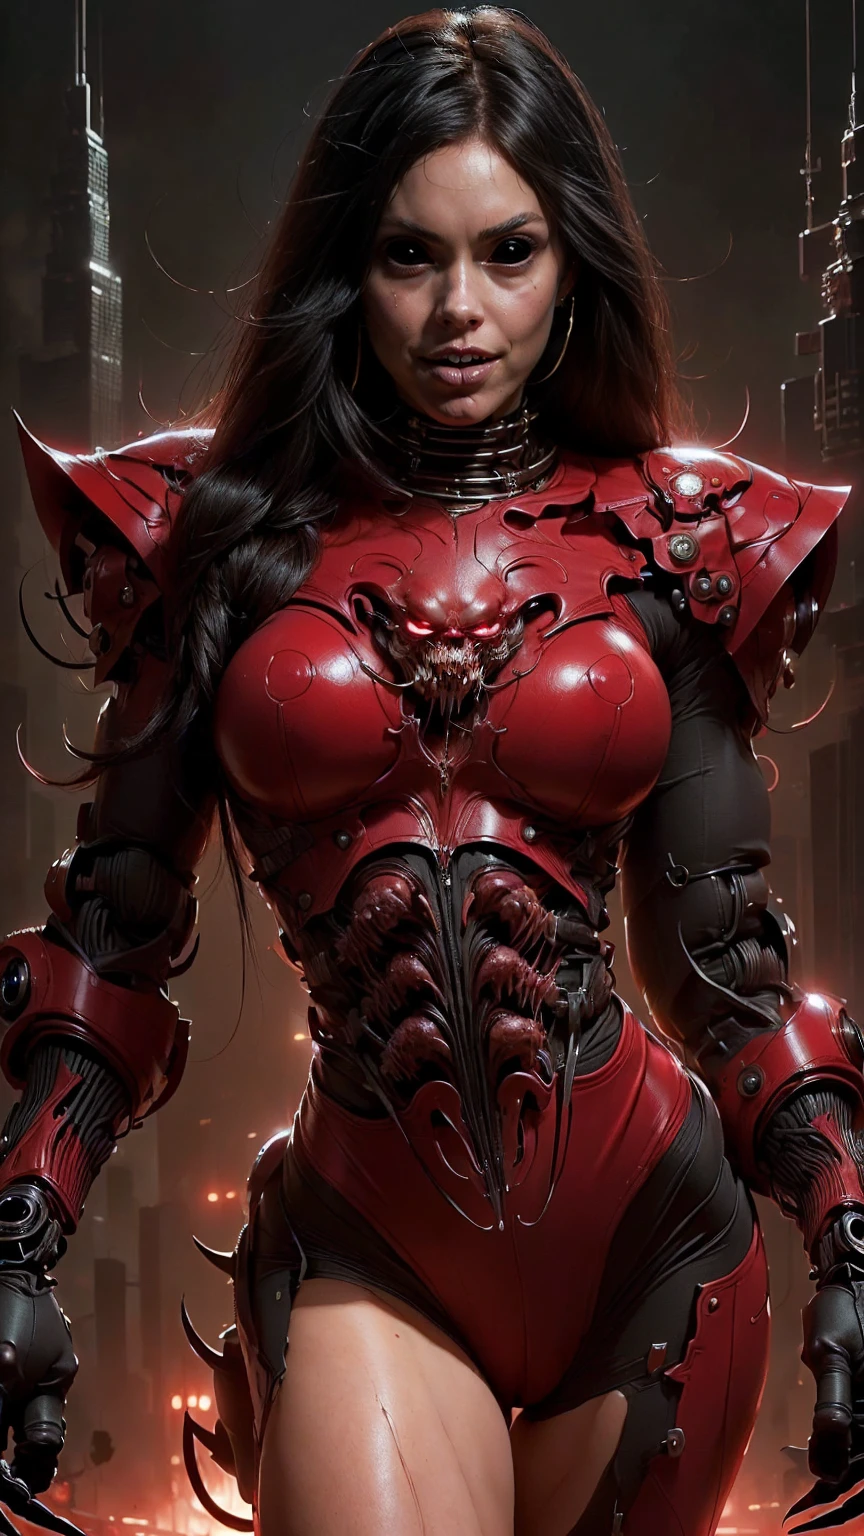 (Красивое лицо девушки:1.45), Меган Фокс в образе красивой девушки-вампира с мускулистым красным кровавым телом, (Red Carnage анатомический мускулистый биомеханический мышечный костюм:1.25), (тело полностью покрыто мышцами, вены, сухожилия), (идеальная мышечная анатомия), (широкие плечи и верхняя часть тела:1.25), (тонкая талия:1.25), (Длинные волосы:1.25), (Идеальные руки:1.25)